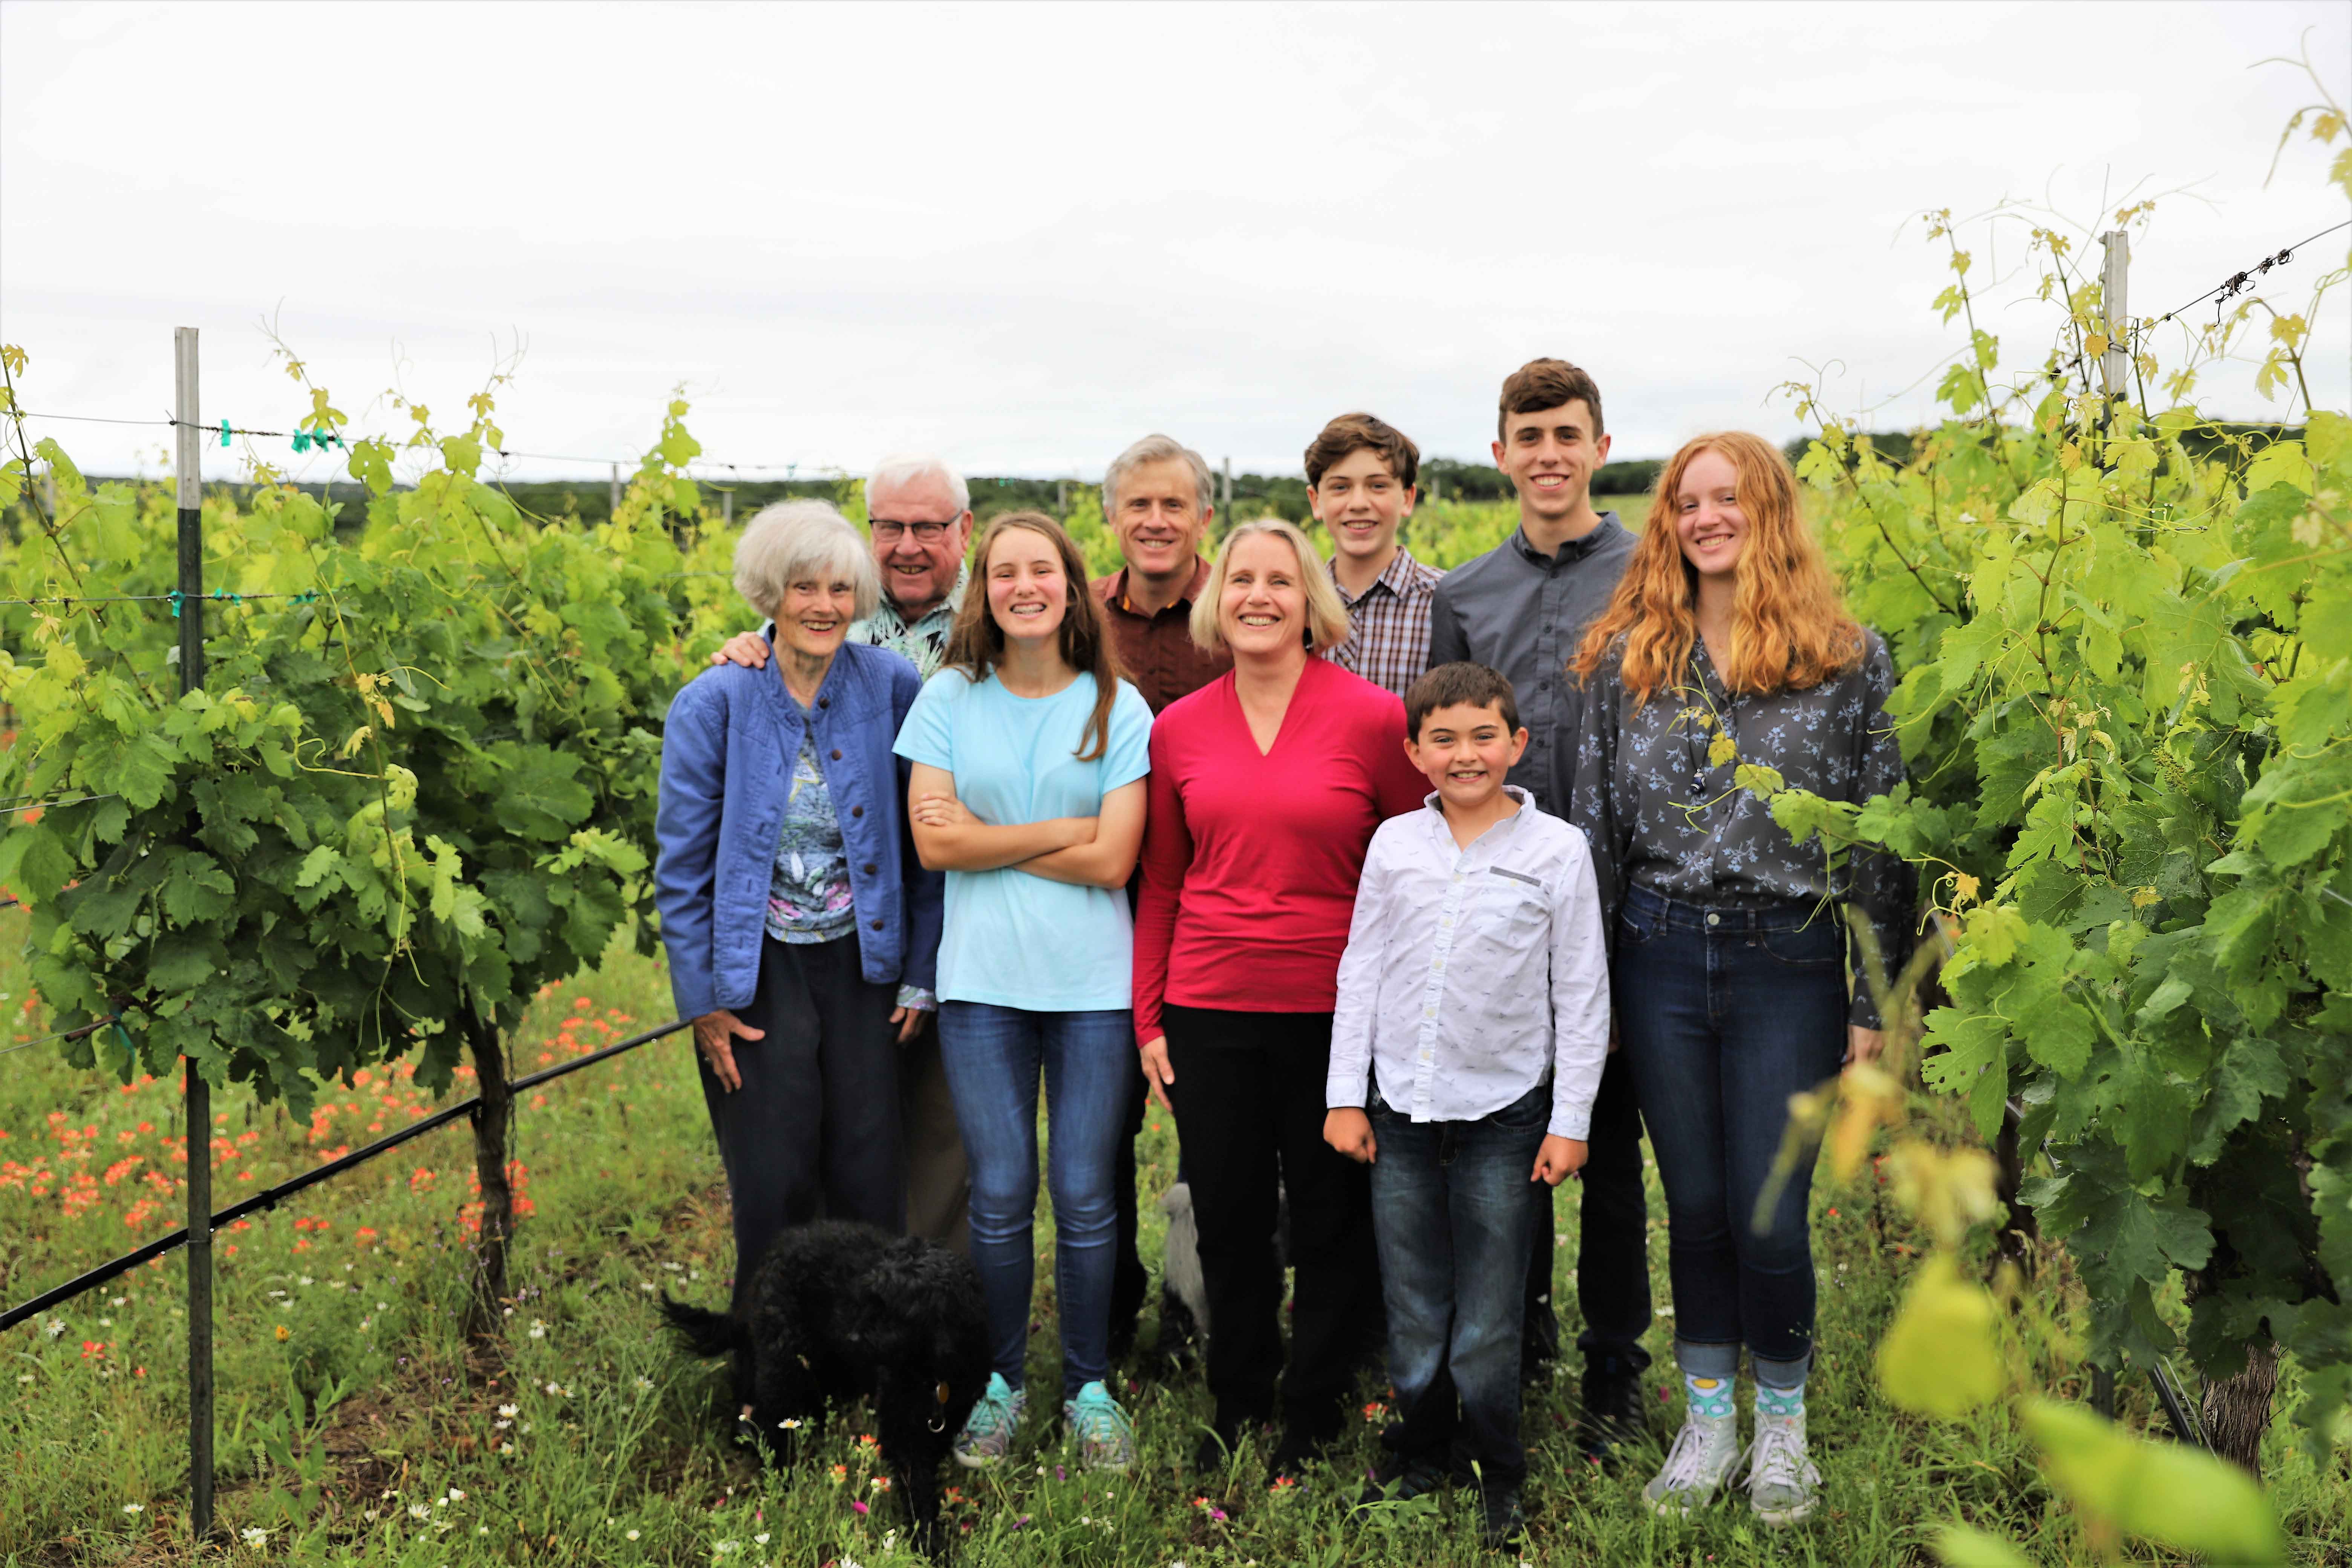 Kuhlken Family in Estate Vineyard